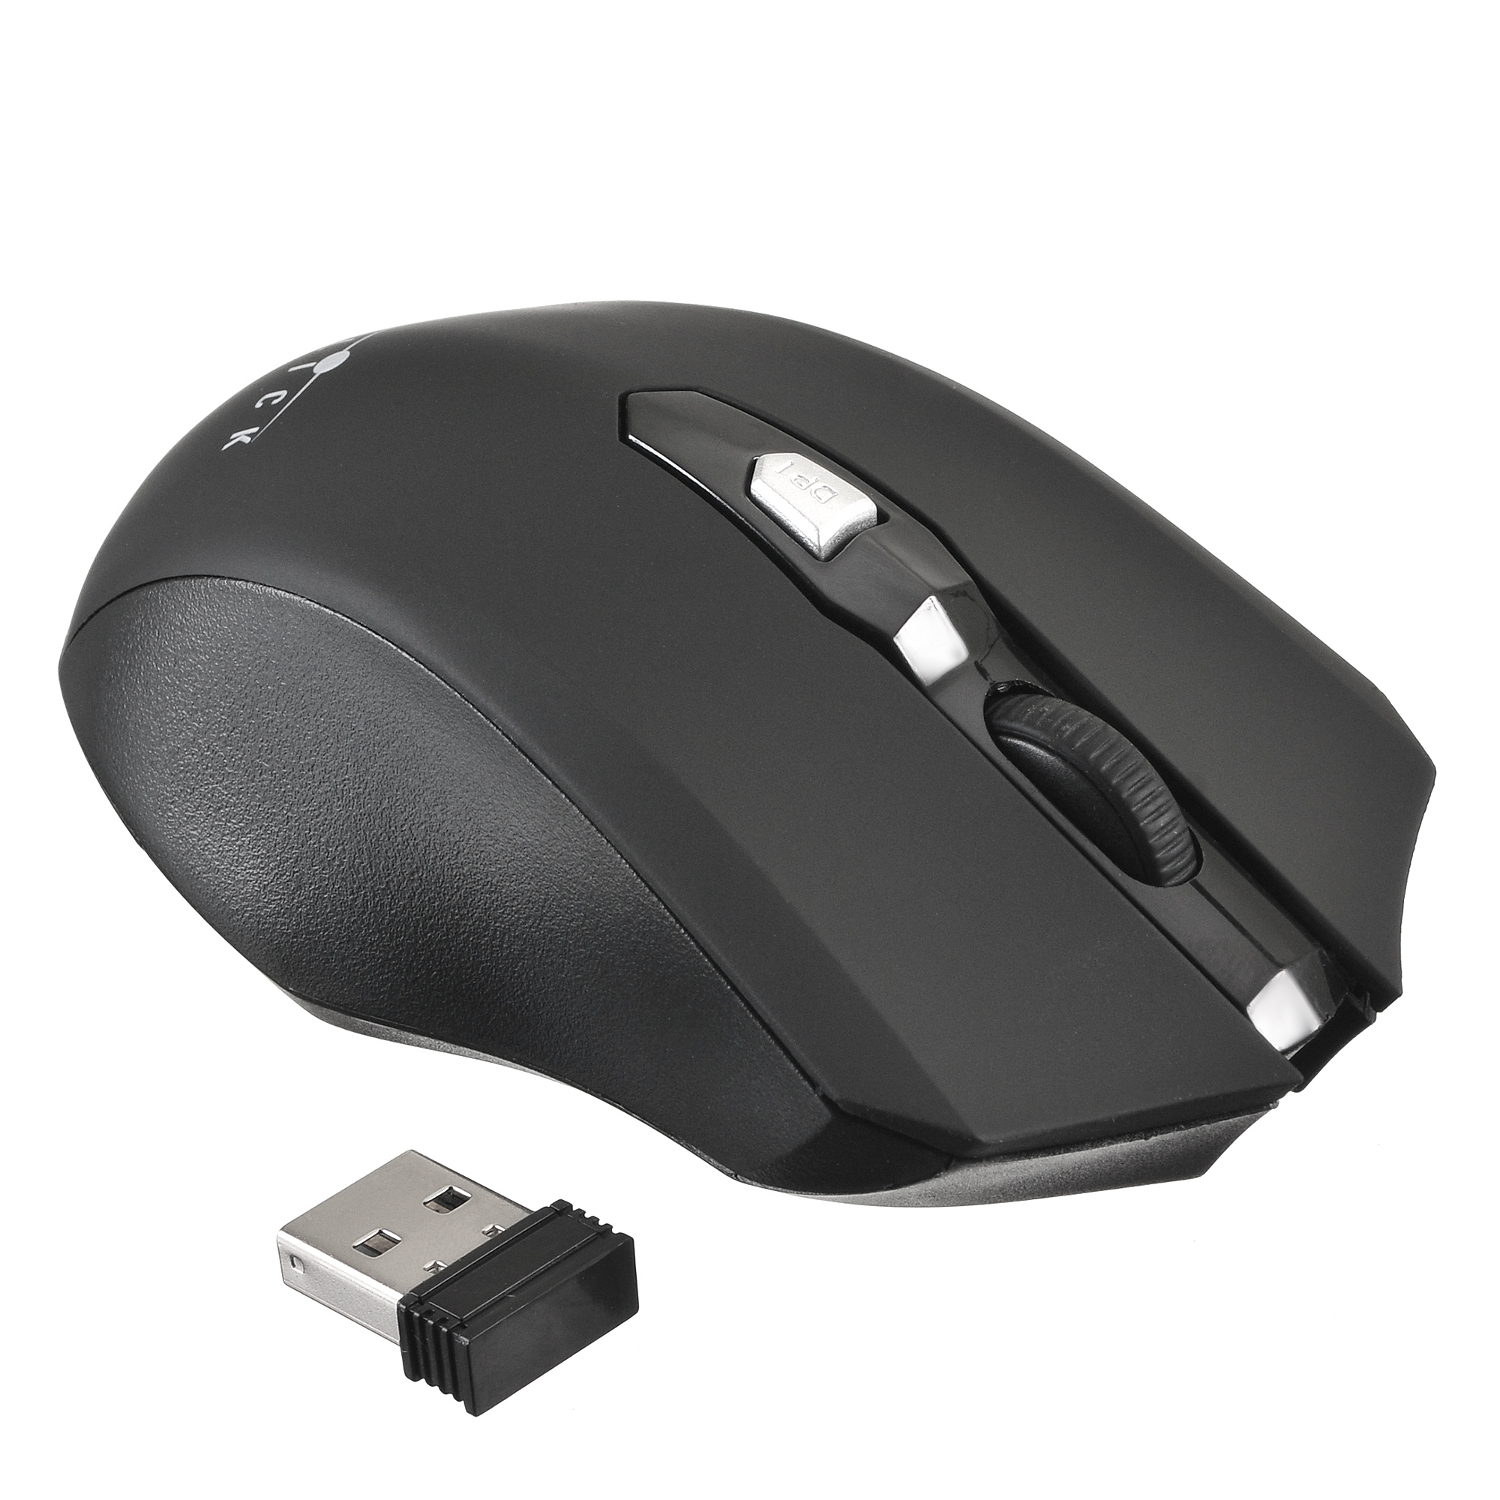 Недорогая беспроводная мышь. 555mw мышь. Мышка Oklick беспроводная. Oklick 990mw. Мышь Oklick 515mw Black USB.